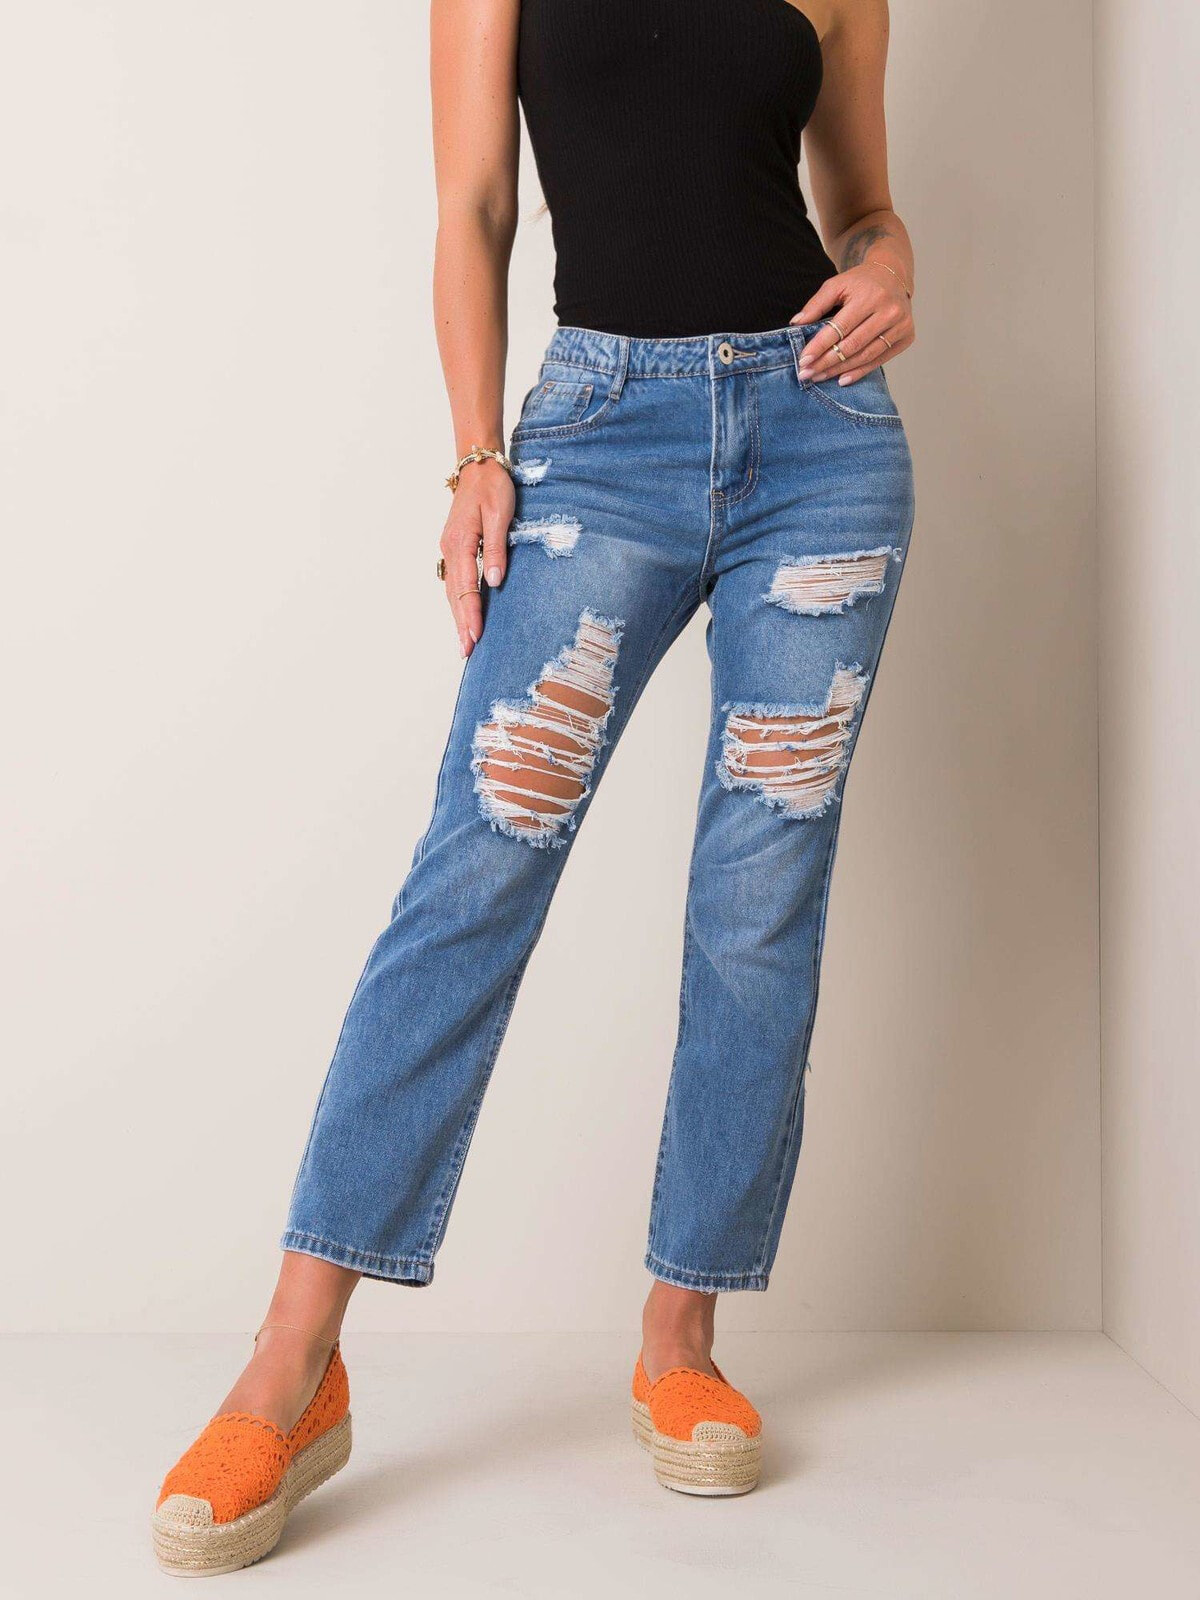 Женские джинсы прямого кроя со средней посадкой укороченные рваные голубые Factory Price